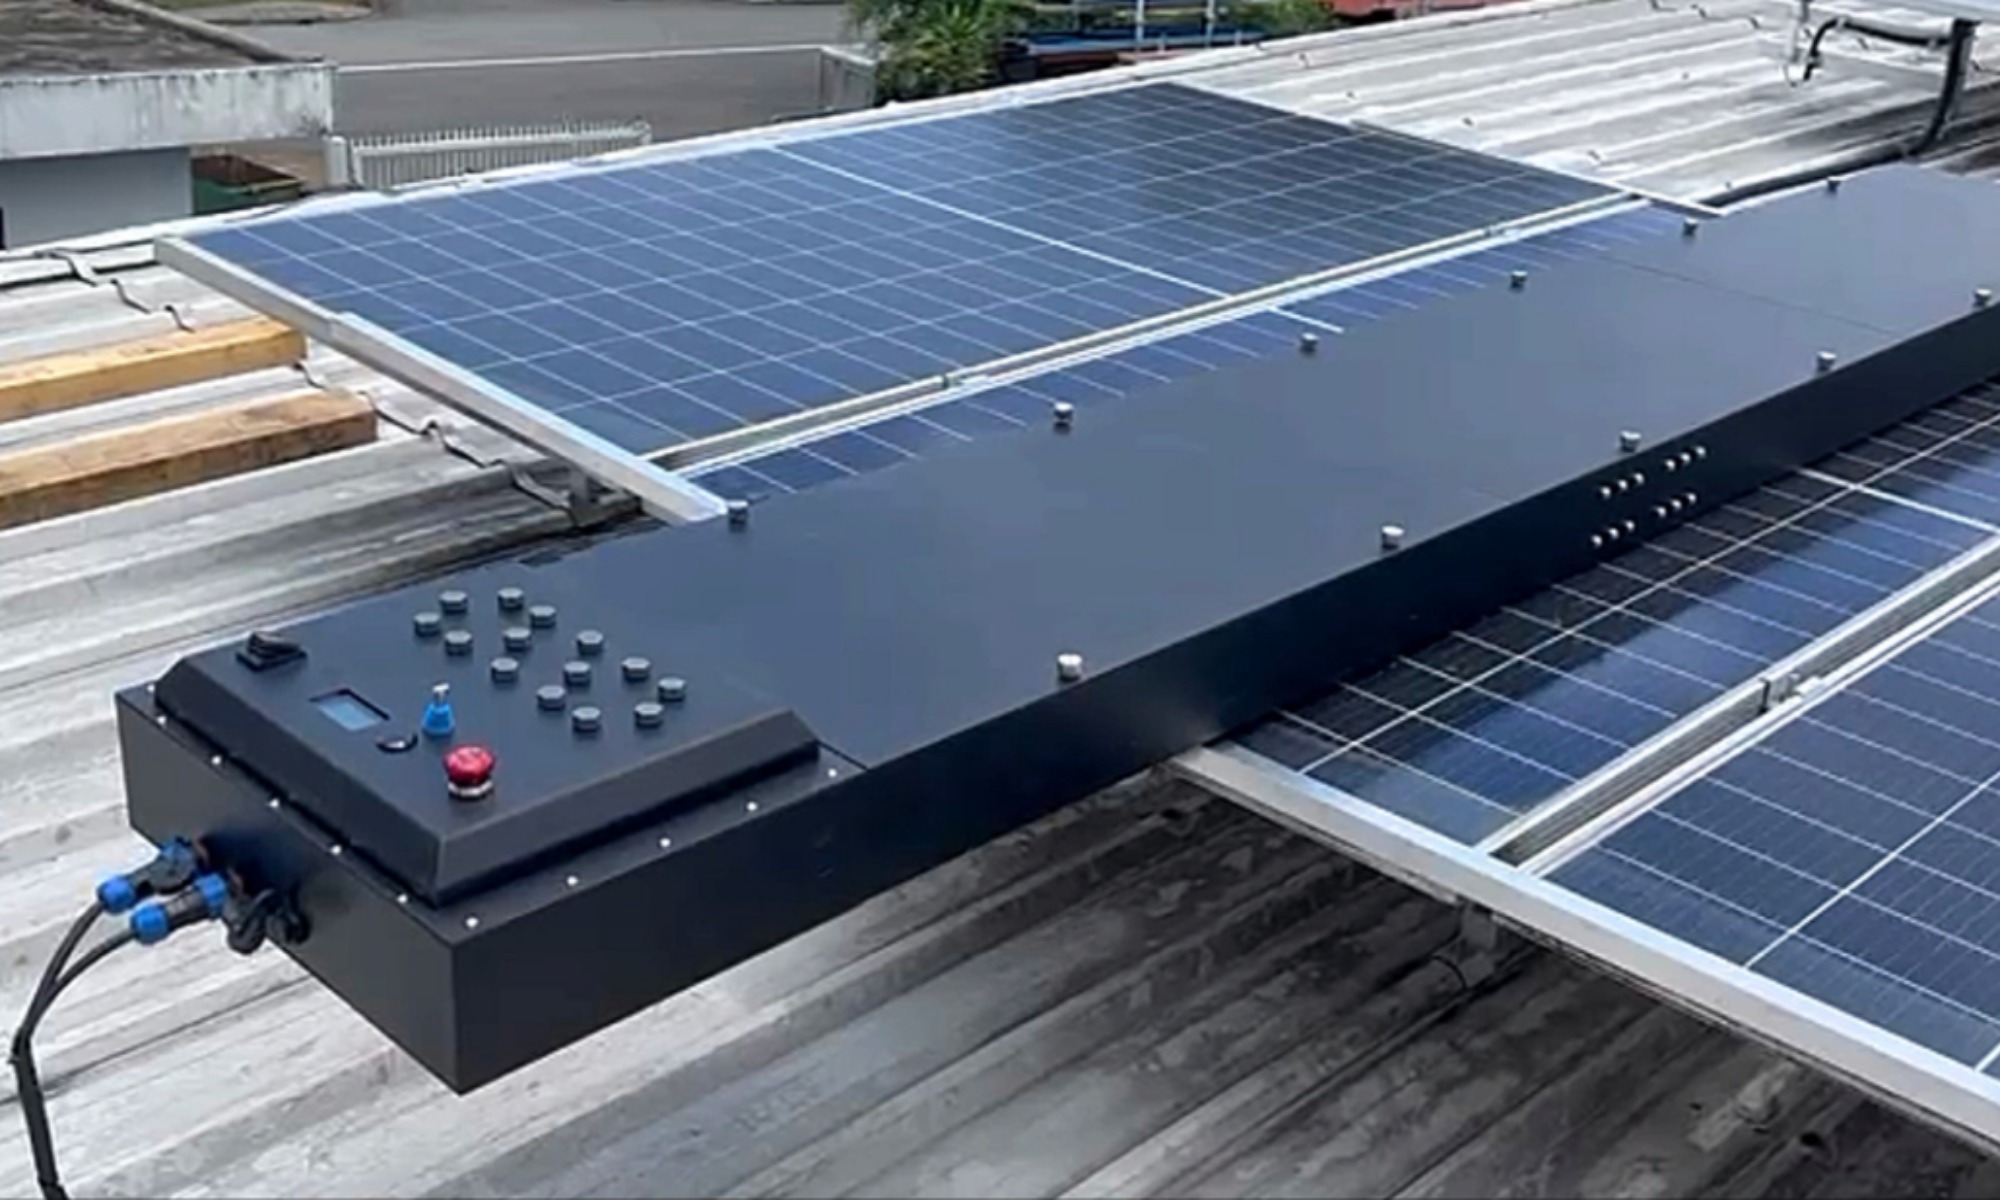 Los paneles solares pueden recibir un tratamiento par mejorar su eficiencia.